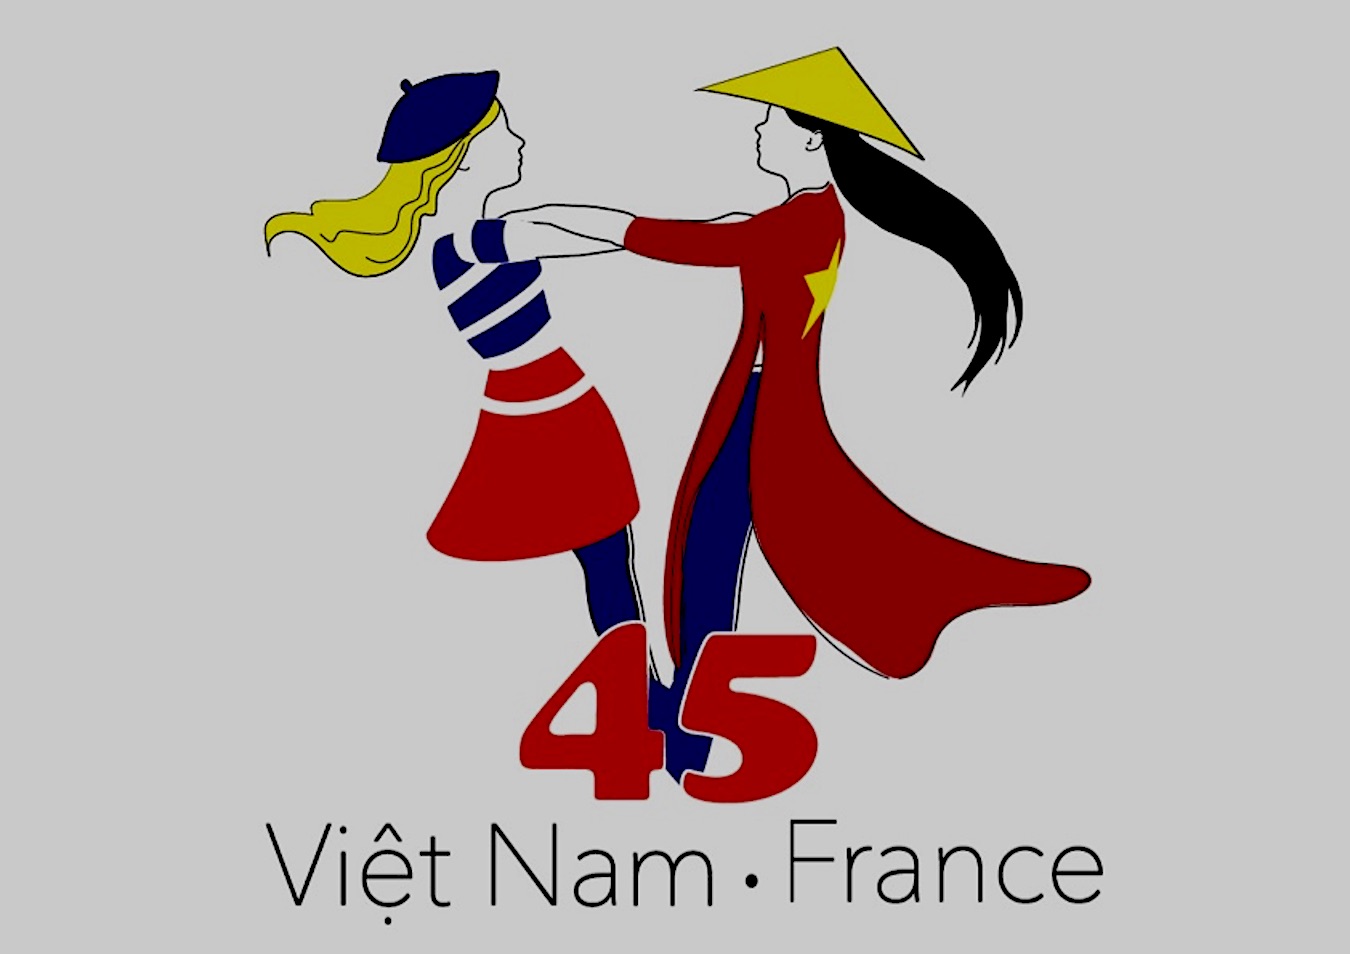 Logo officiel "Anniversaire 45 ans des relations diplomatiques France Vietnam".